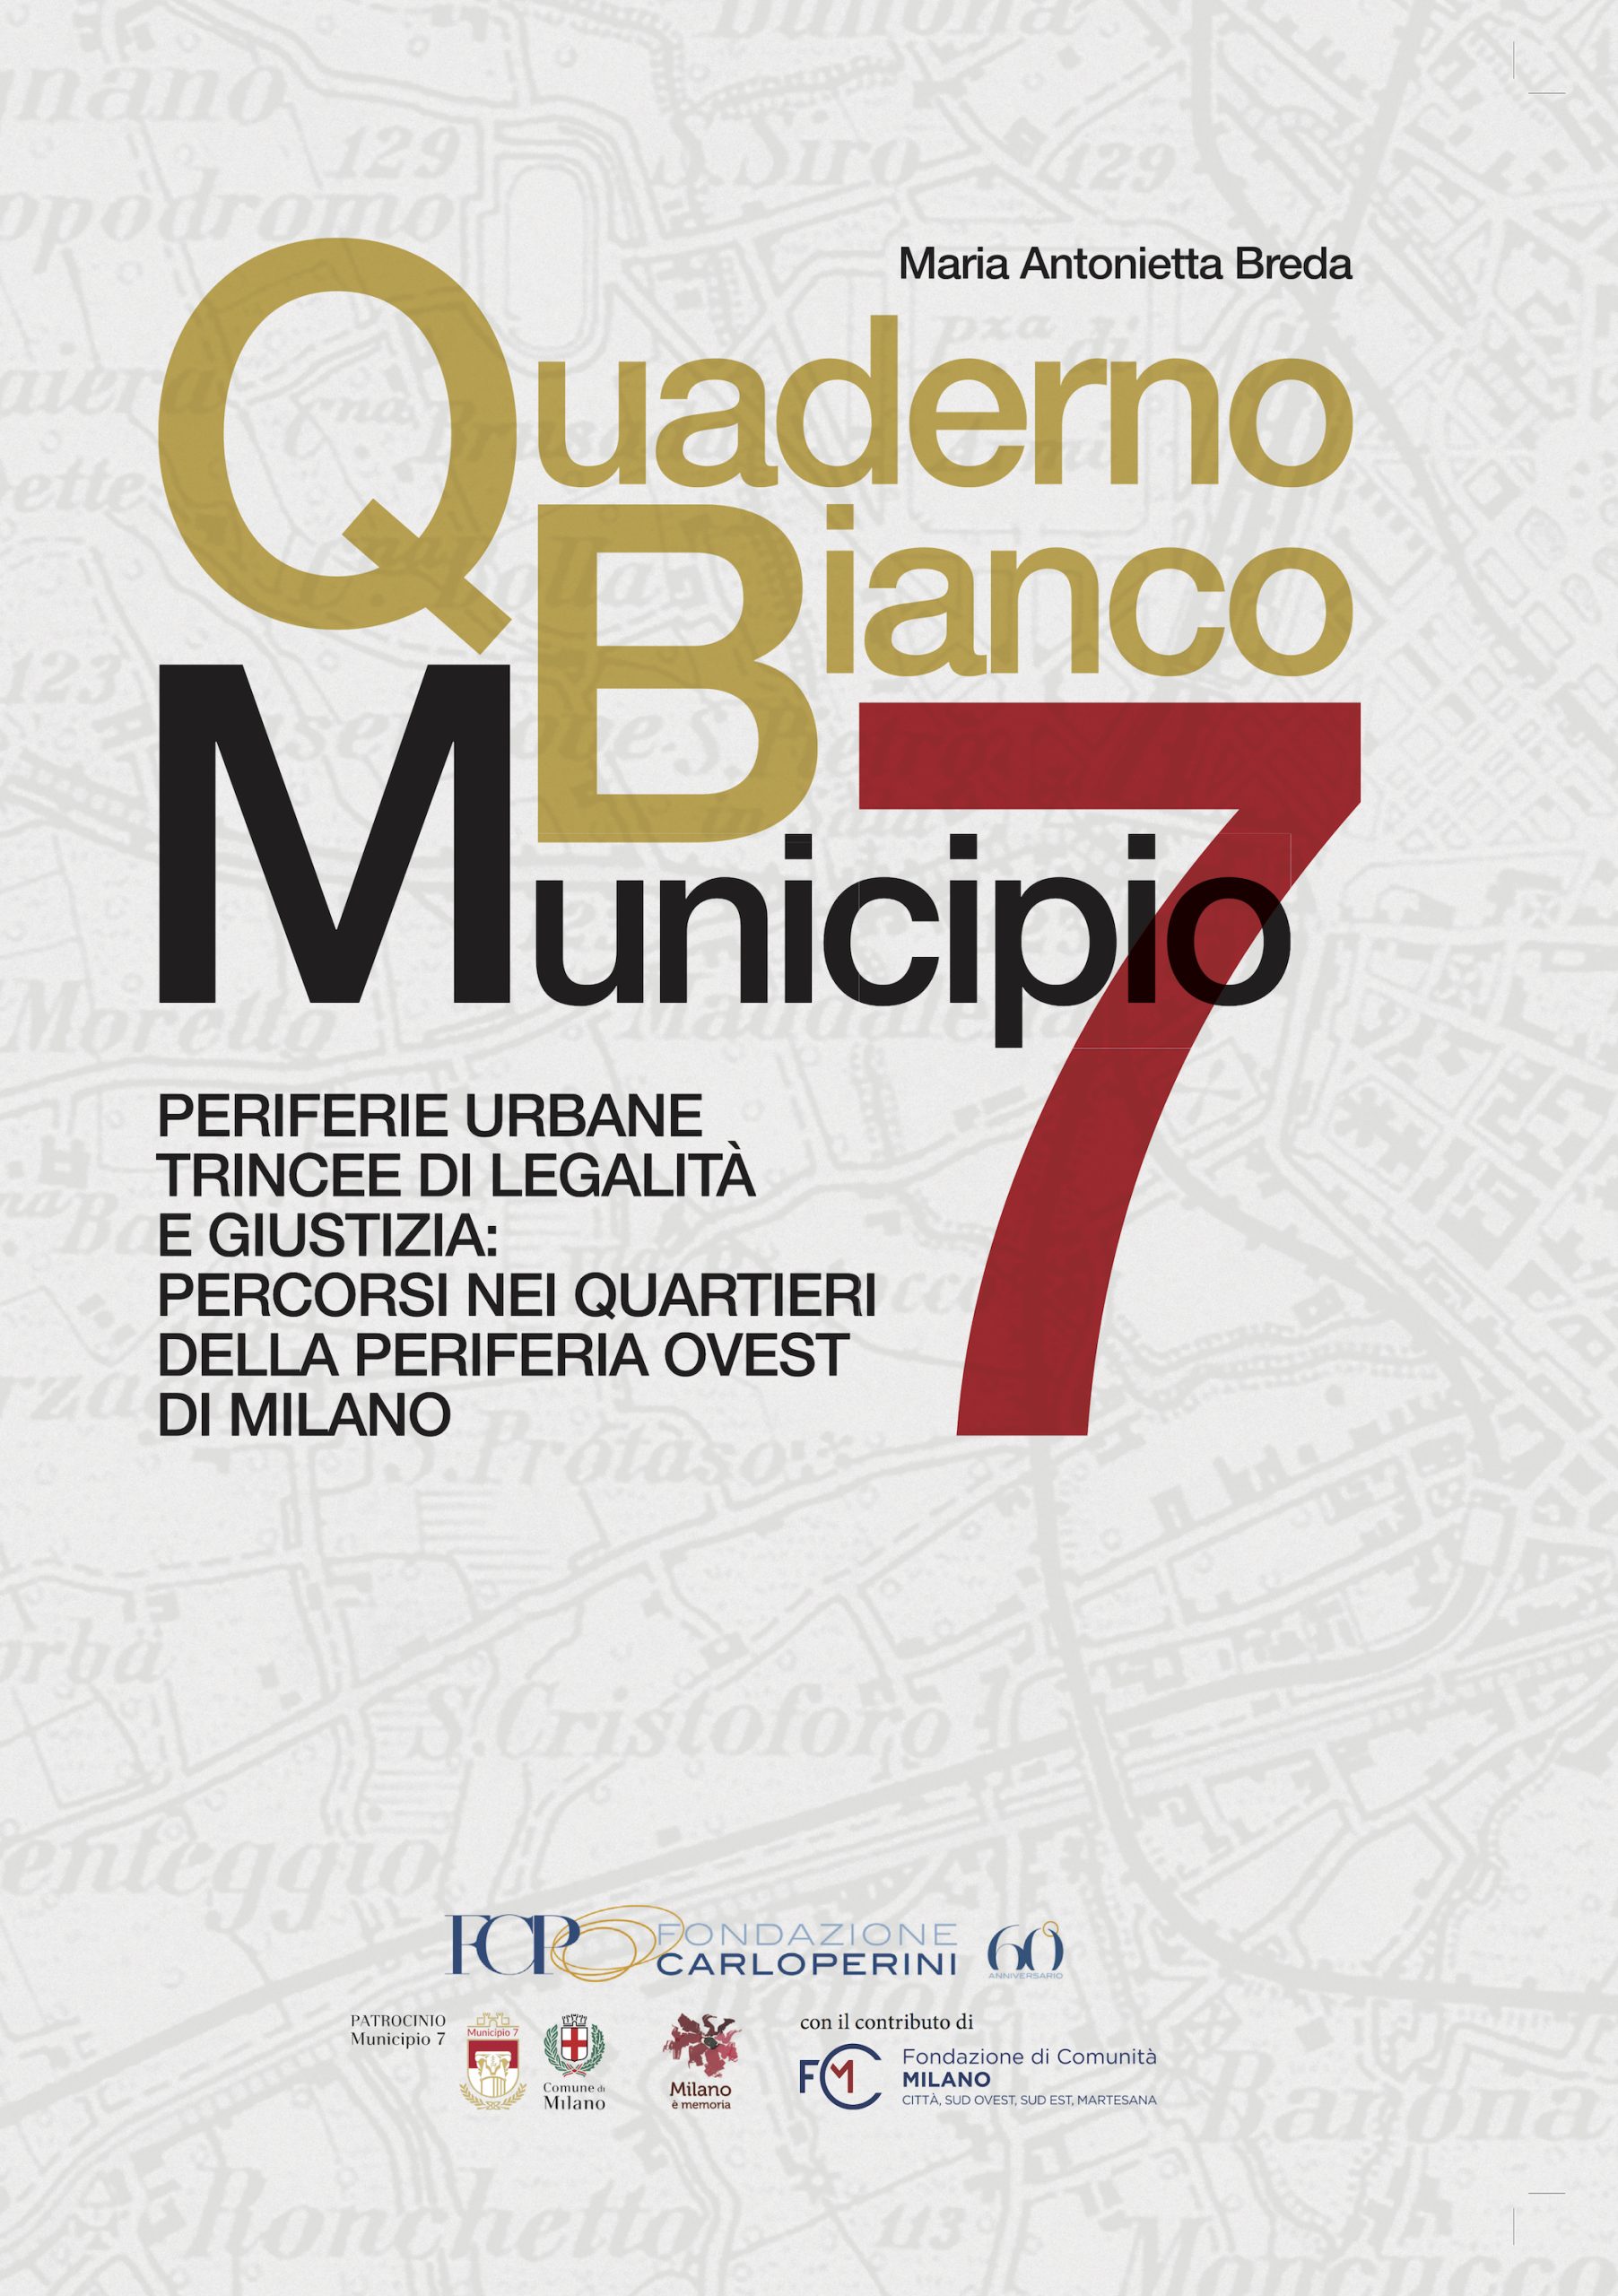 Prima di copertina del libro di Maria Antonietta Breda Quaderno Bianco Municipio 7 - Milano